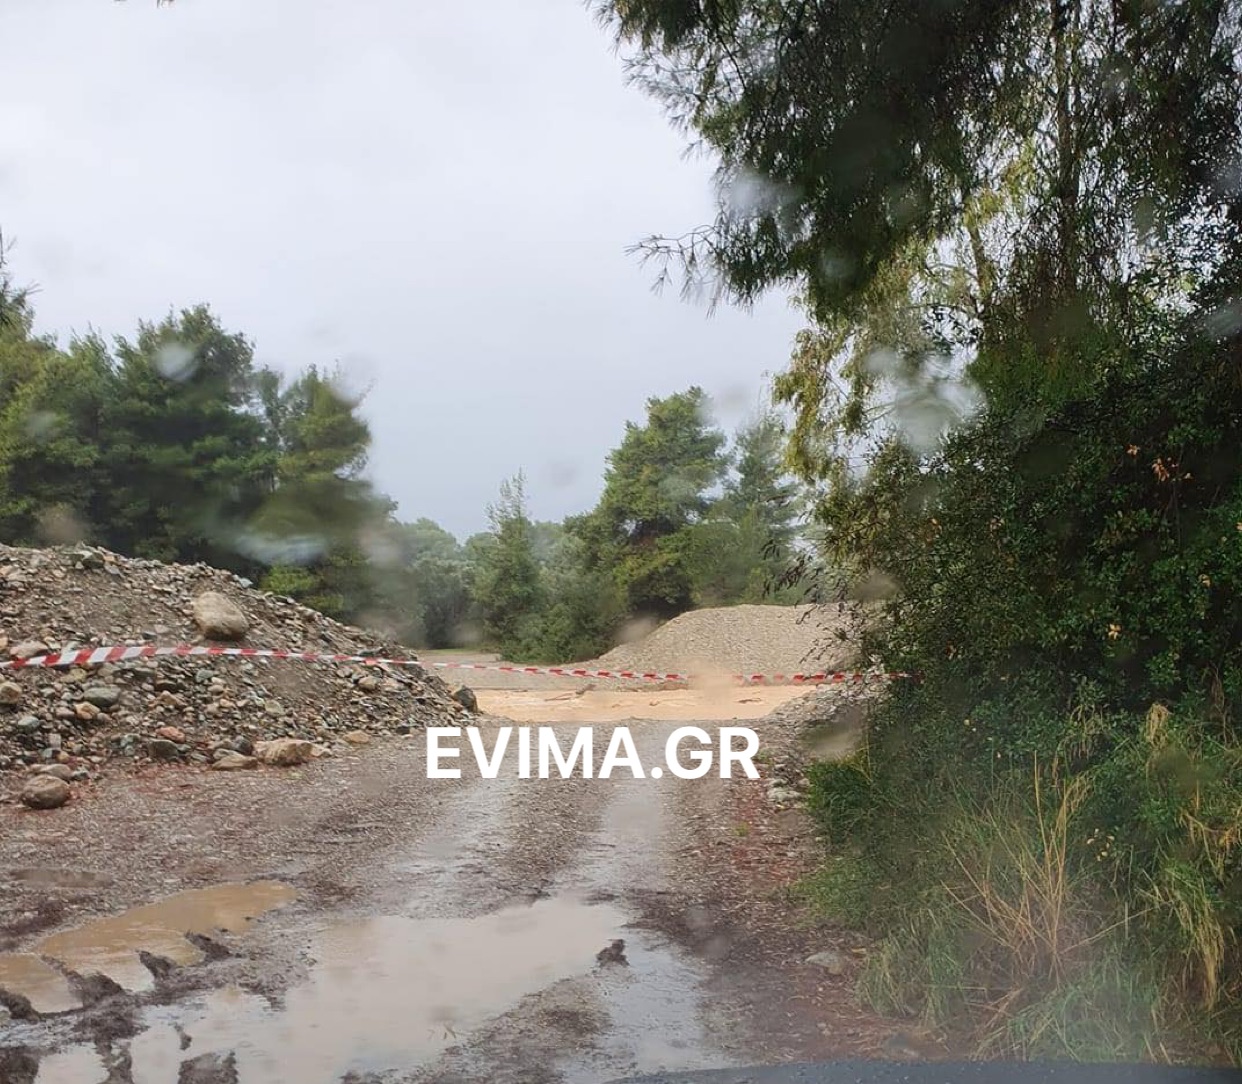 Προβλήματα από την κακοκαιρία στη Β. Εύβοια: Κλειστός ο δρόμος και στην περιοχή Γεράνια της Κοινότητας Ροβιών λόγω επικινδυνότητας